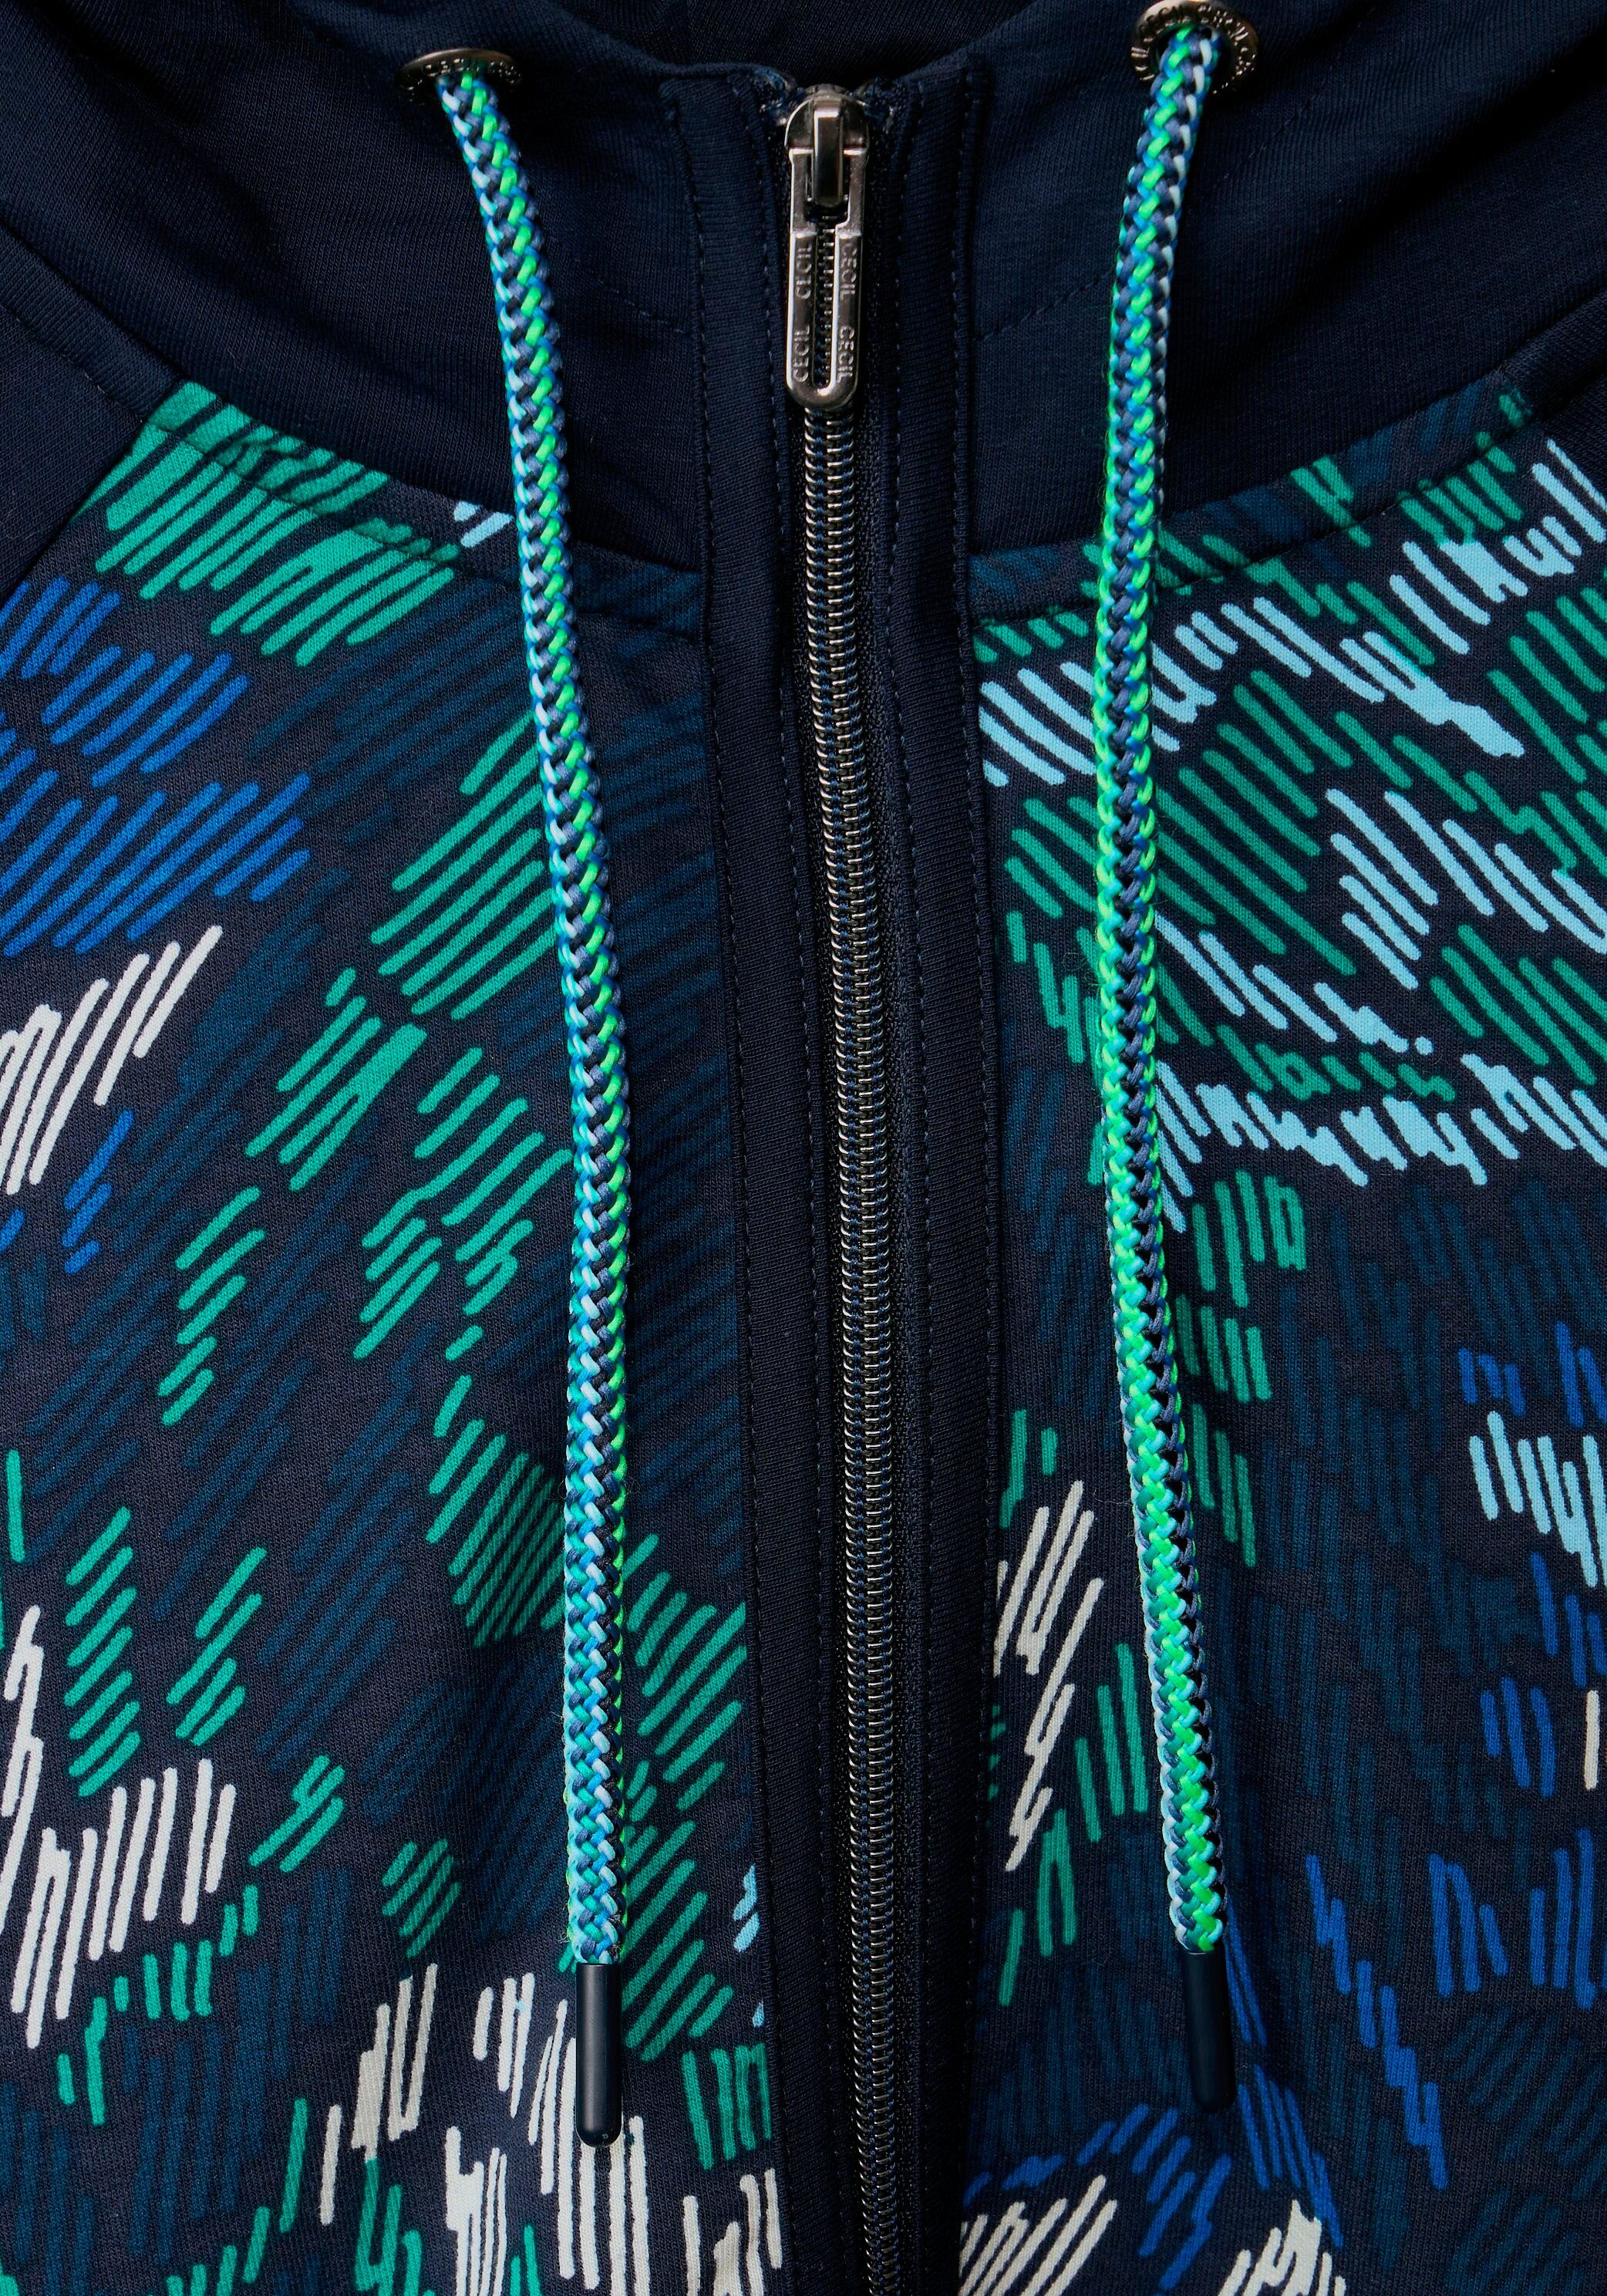 Print Mix Jacket mit Cecil Solid Streifenappltikation Frontprint und Shirtjacke